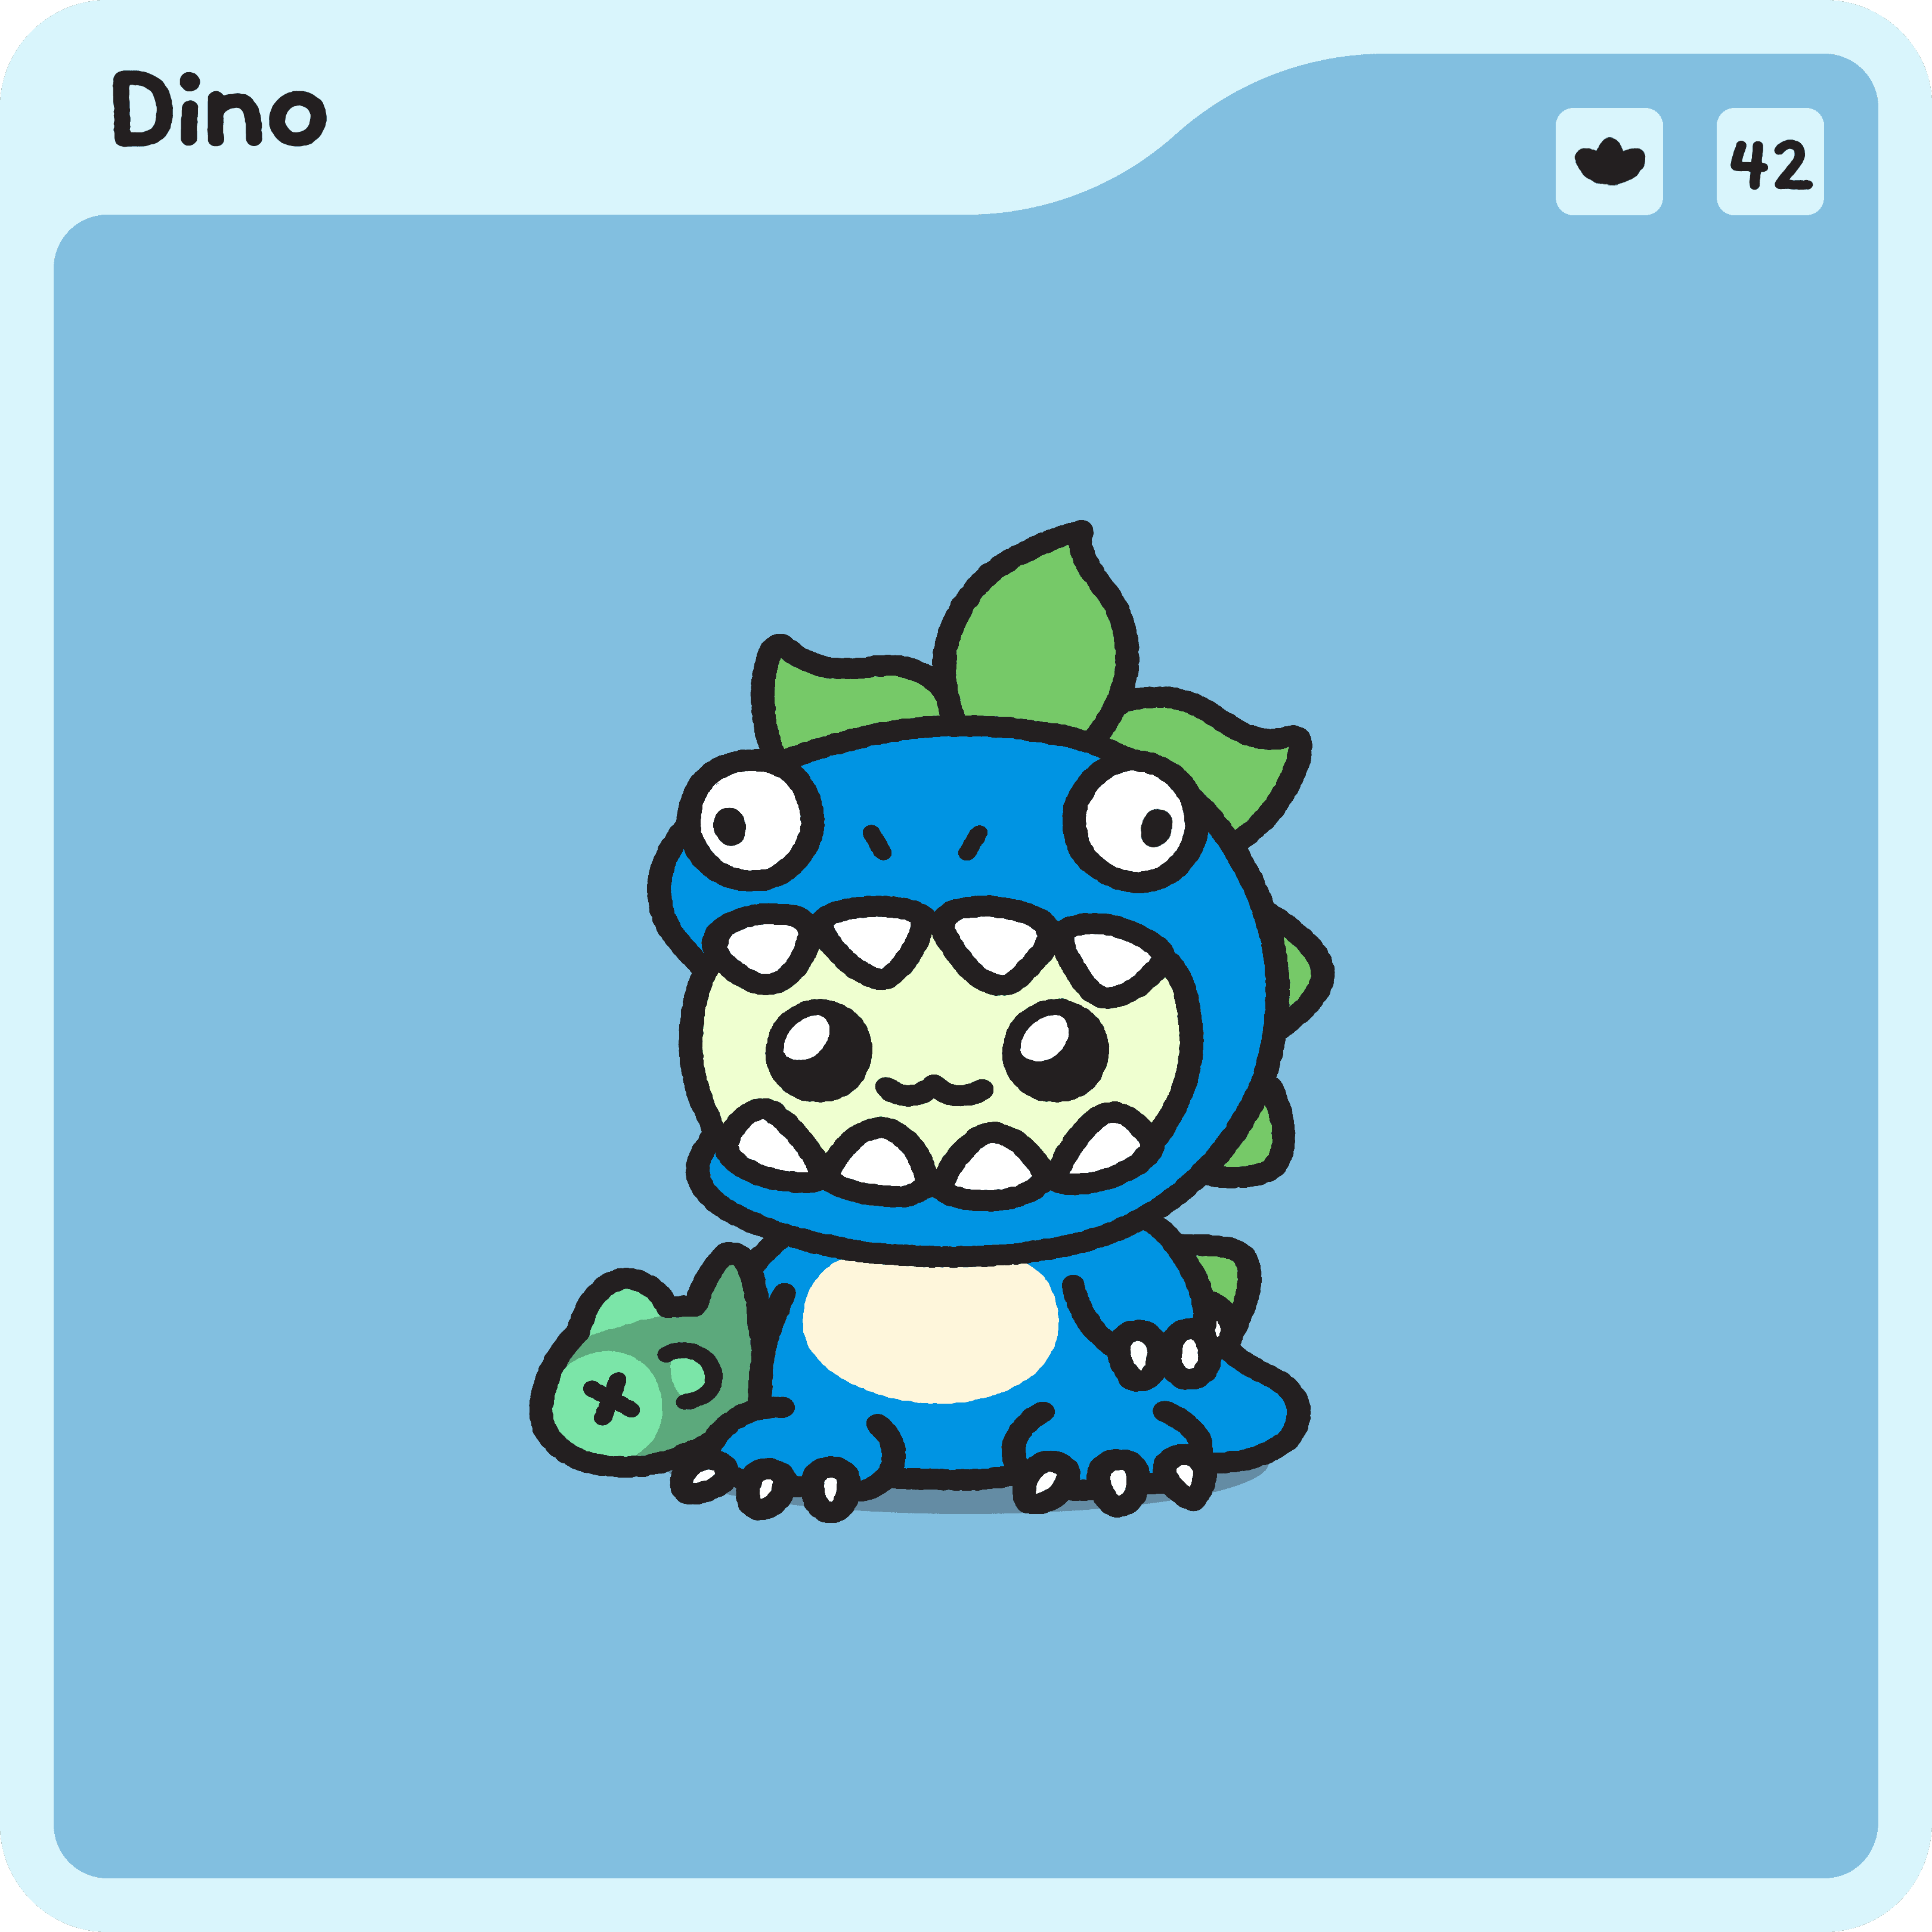 Dino Sage #42